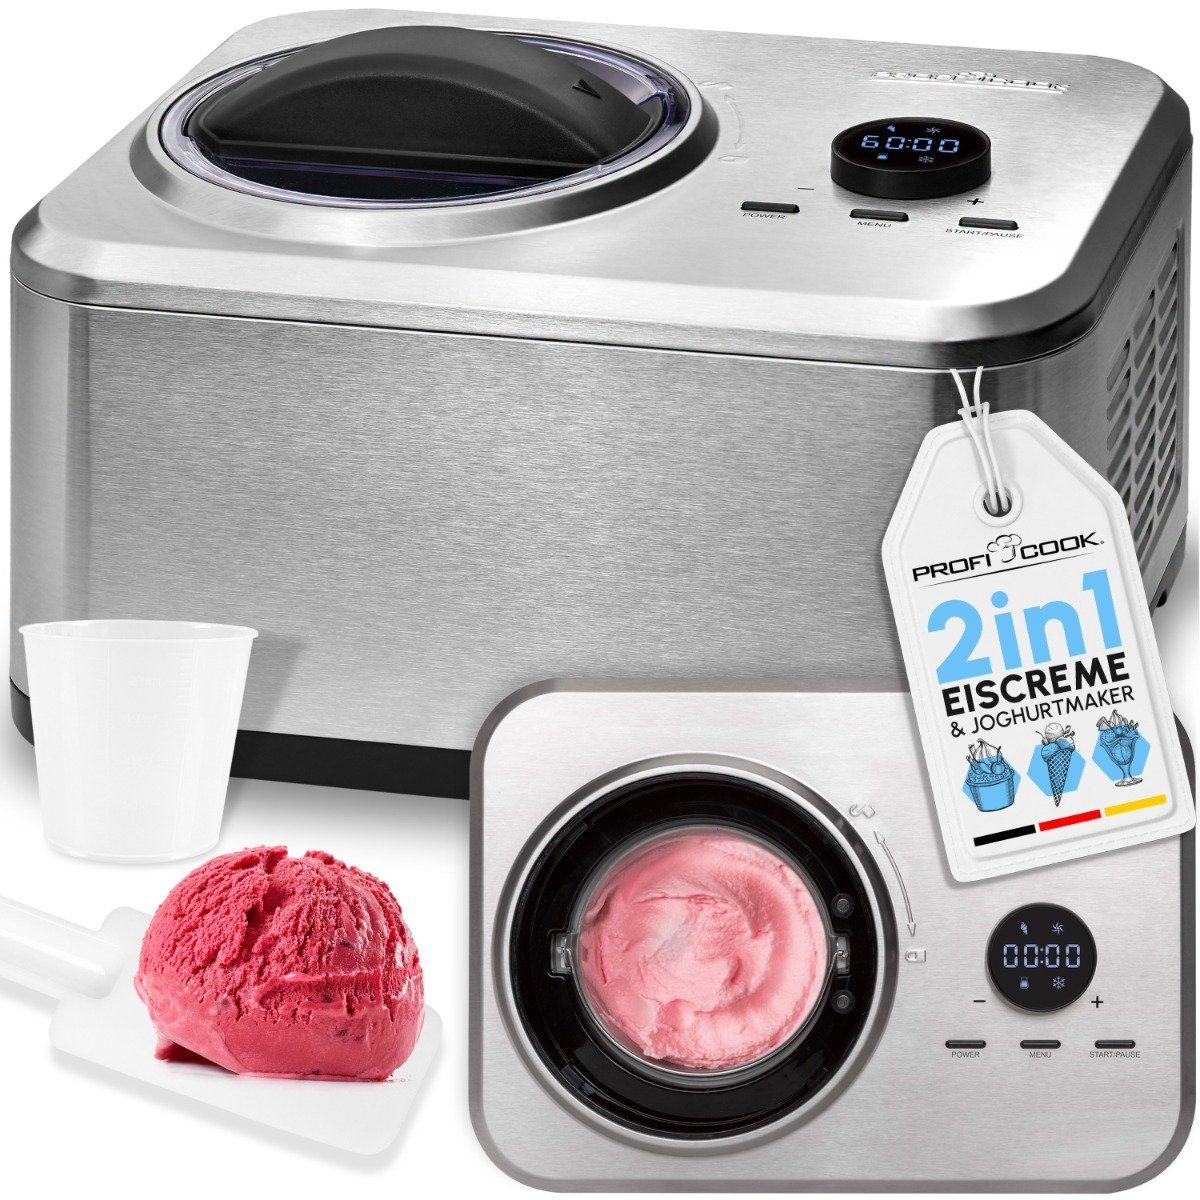 Eismaschine Joghurtbereiter, PC-ICM in 20 und min. Eis 1268, Eismaschine ProfiCook